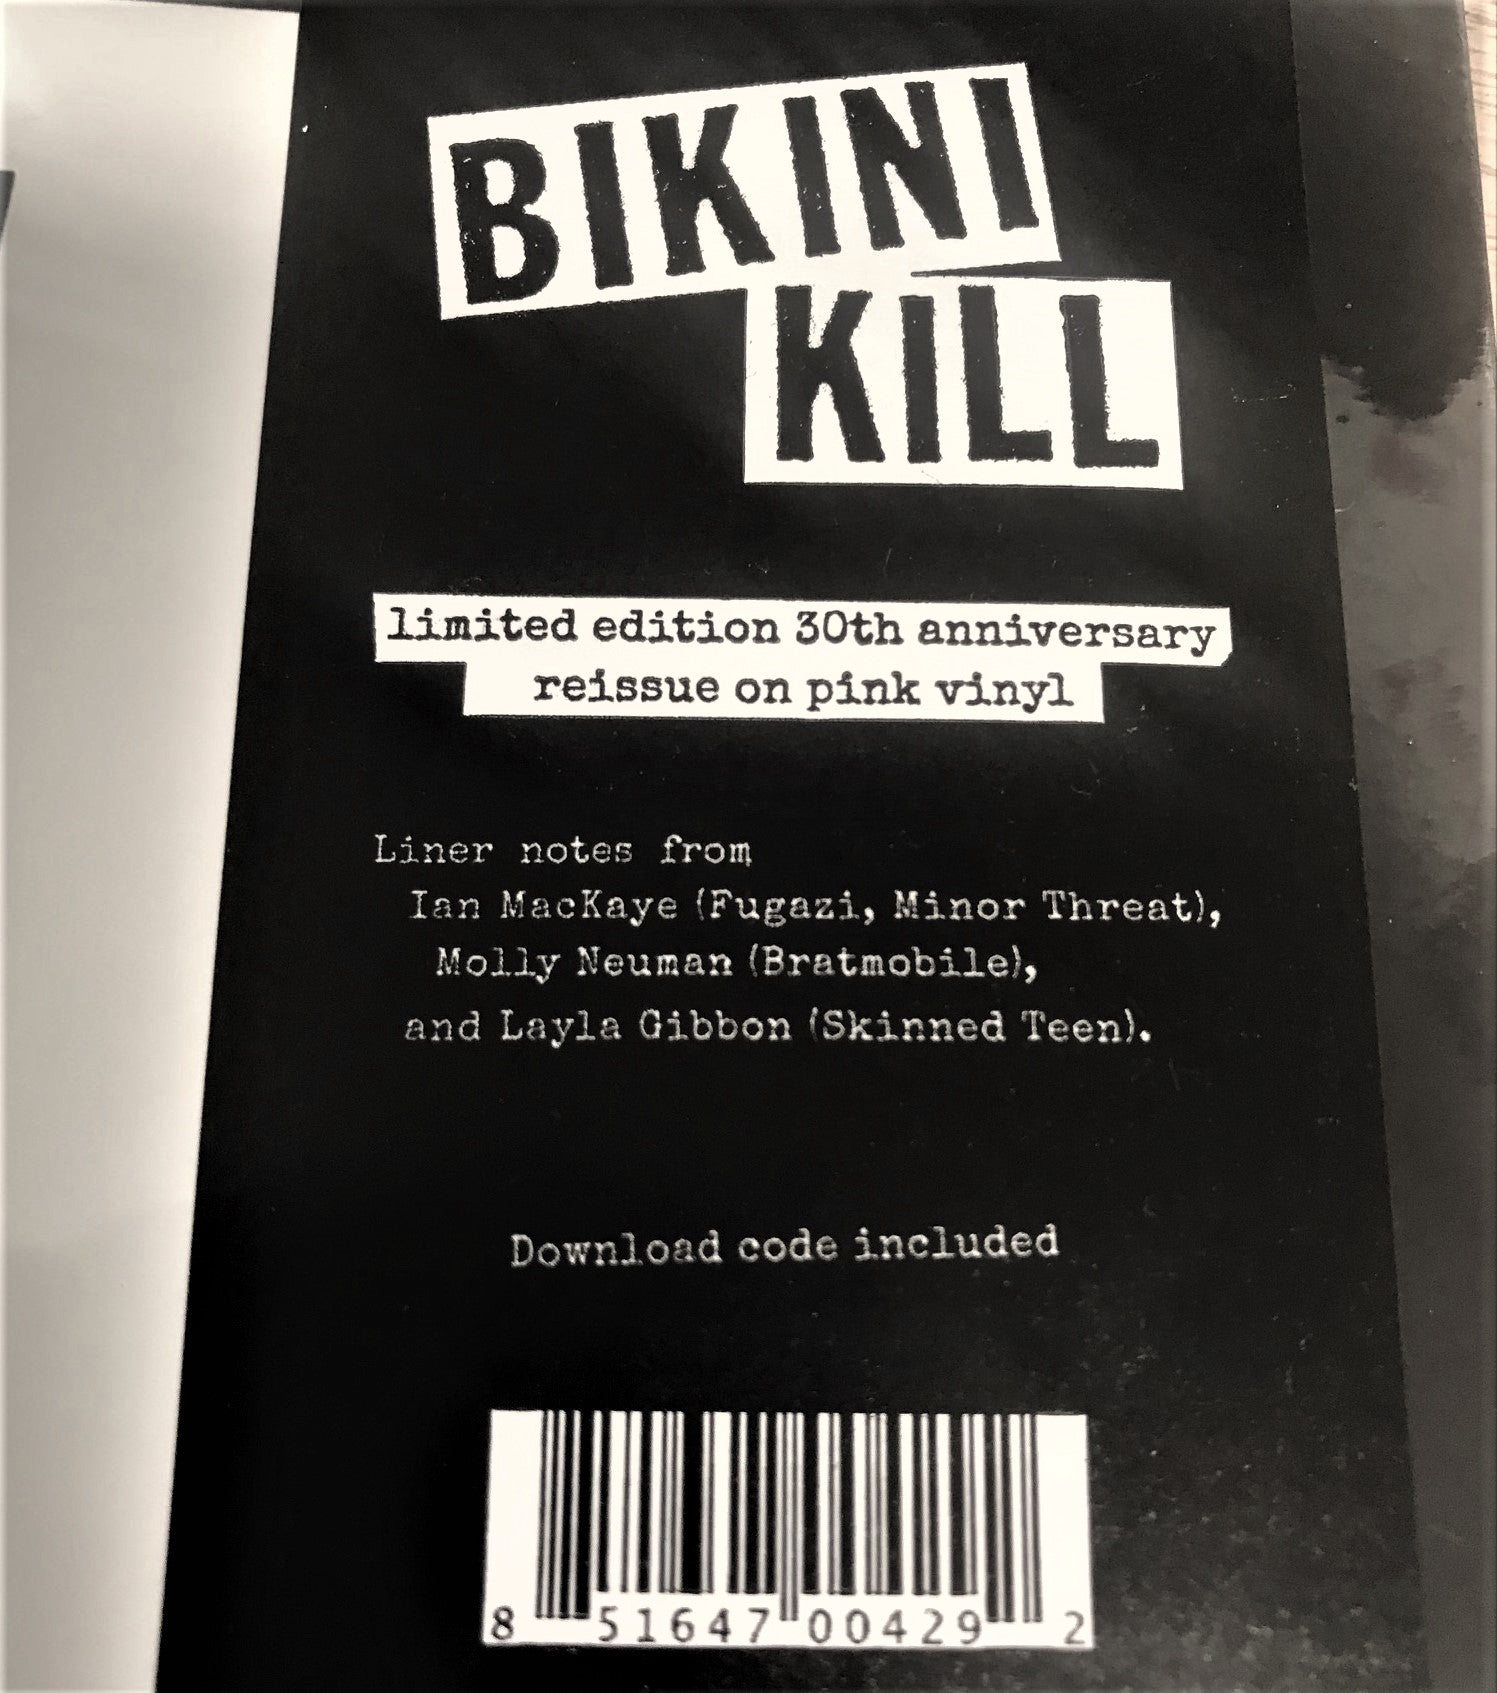 Arcade Sound - Bikini Kill - Bikini Kill front cover